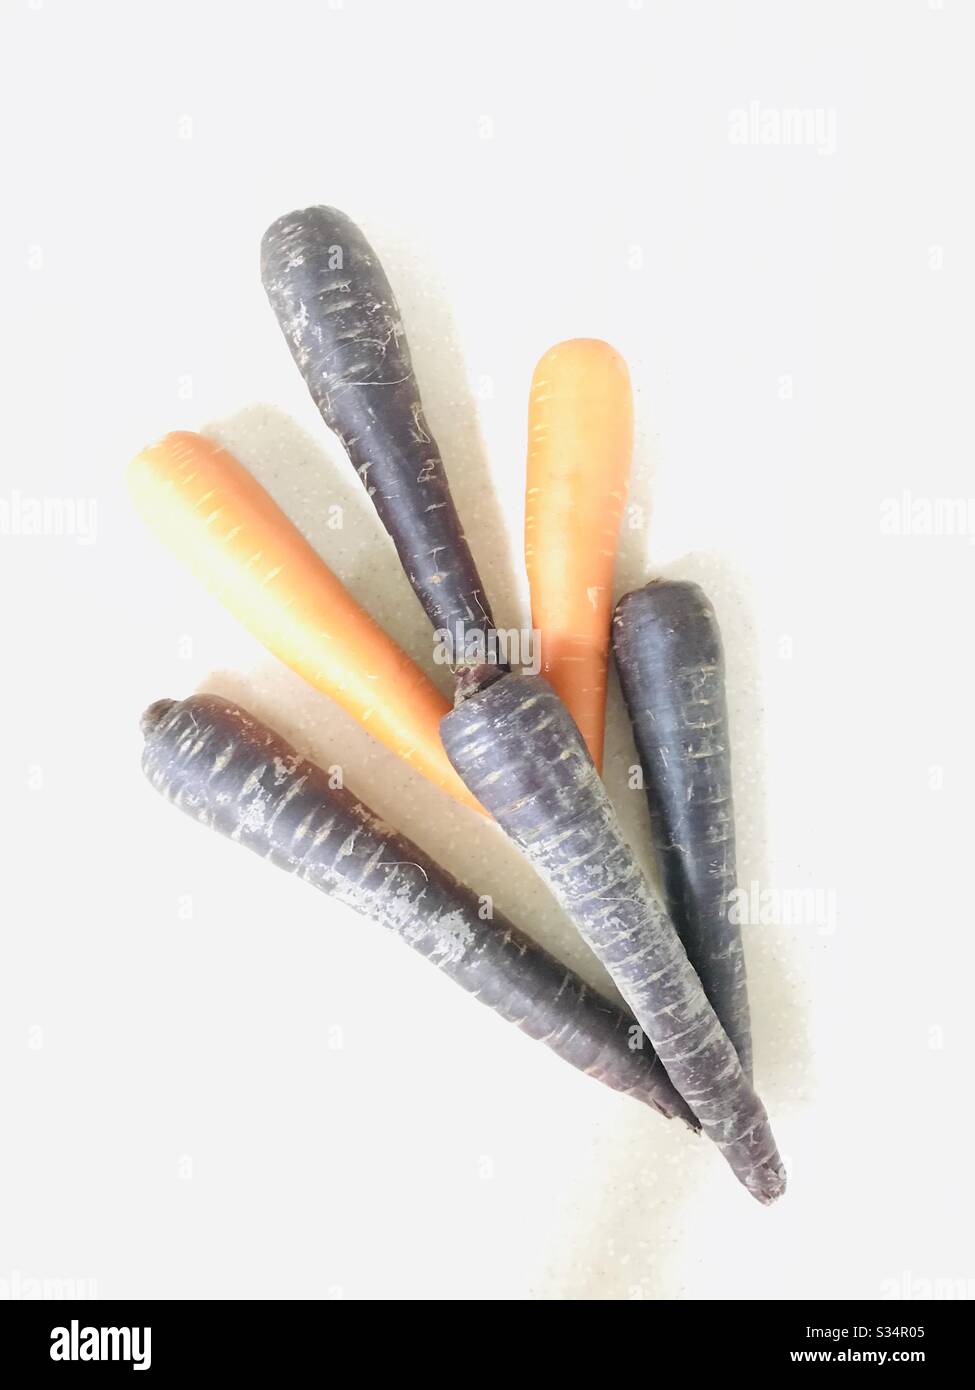 Purplets, carote viola crude disposte con carote d'arancia ricche di antiossidanti, proprietà antinfiammatorie e antimicrobiche, verdure perfette per la preparazione di insalate e spuntini veloci per bambini, verdure alle radici Foto Stock